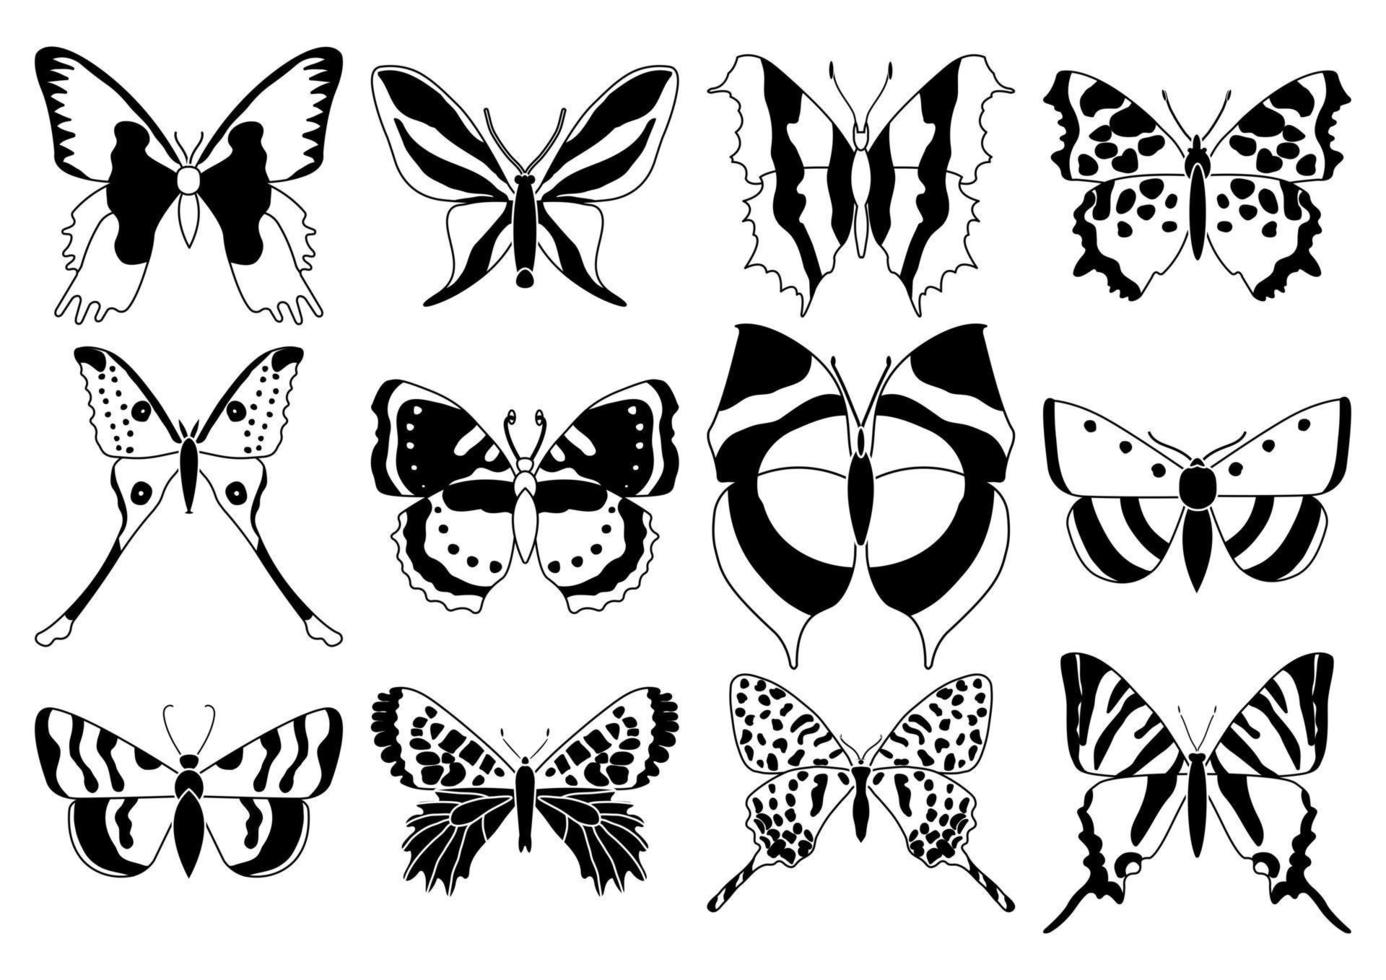 conjunto vetorial de borboletas em um fundo branco, desenhando insetos decorativos, silhuetas desenhadas à mão, vetor isolado